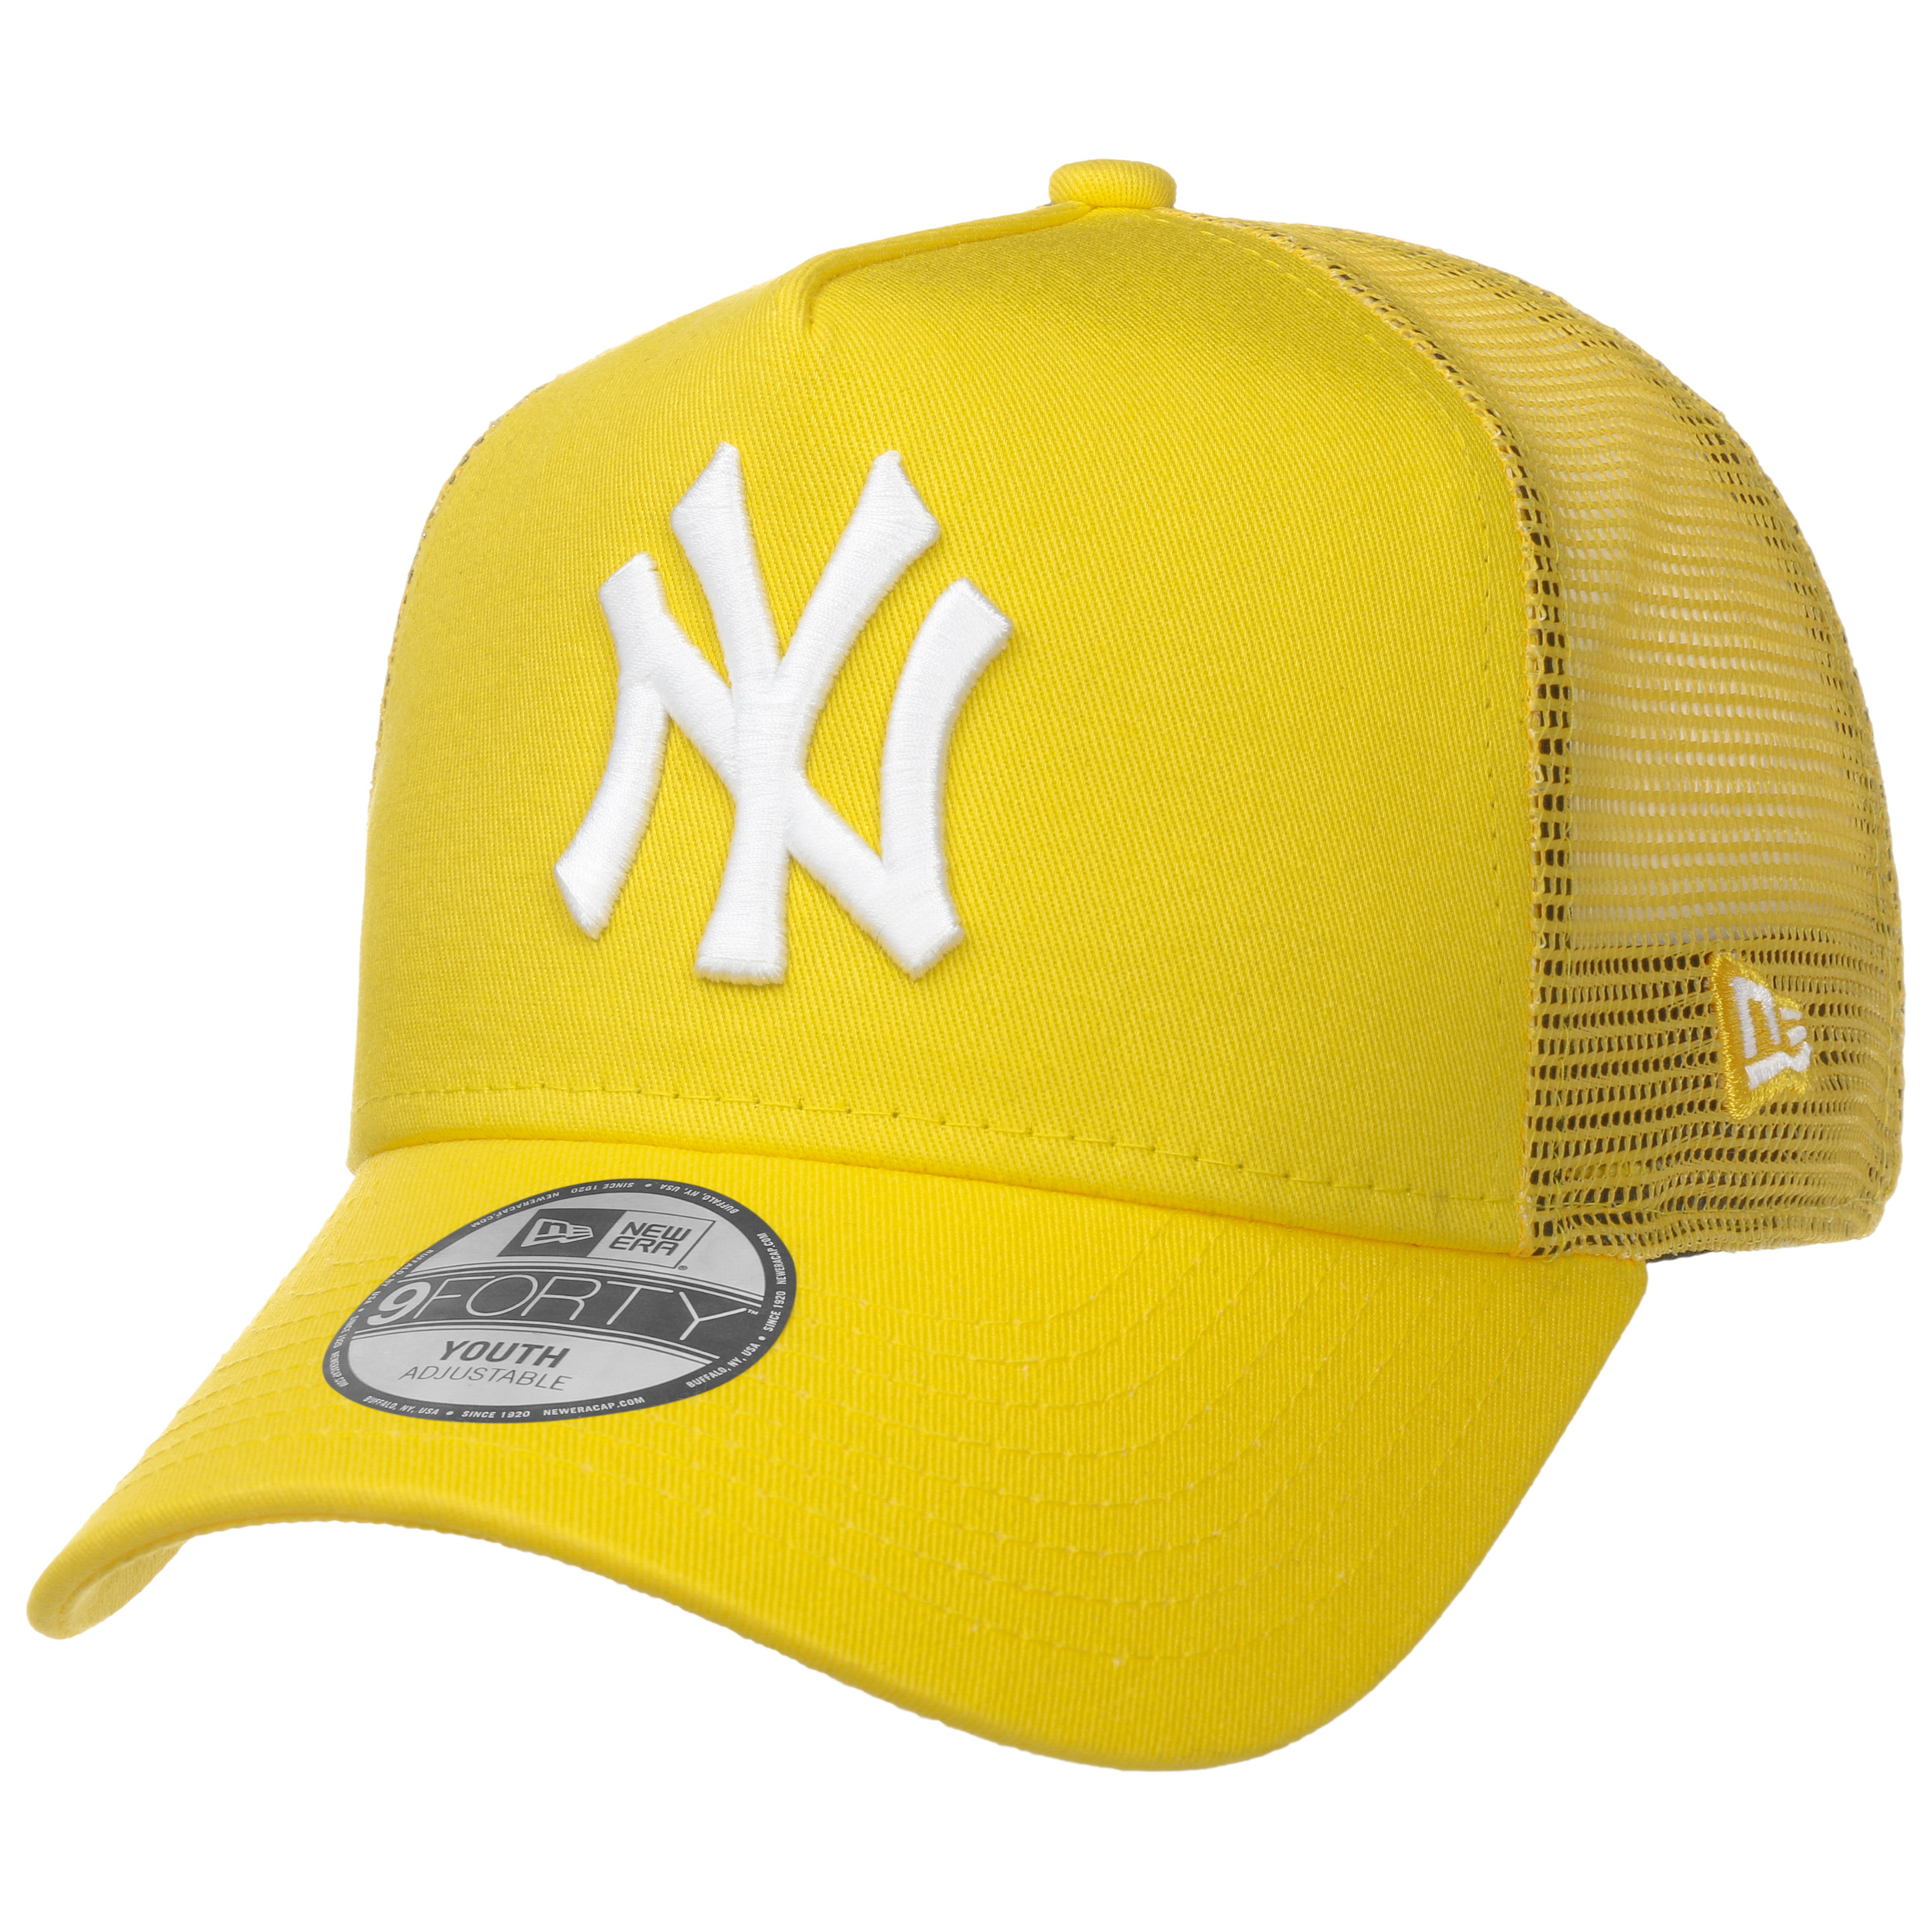 Trucker Cap Era by Youth New 22,95 Yankees Tonal - € Mesh